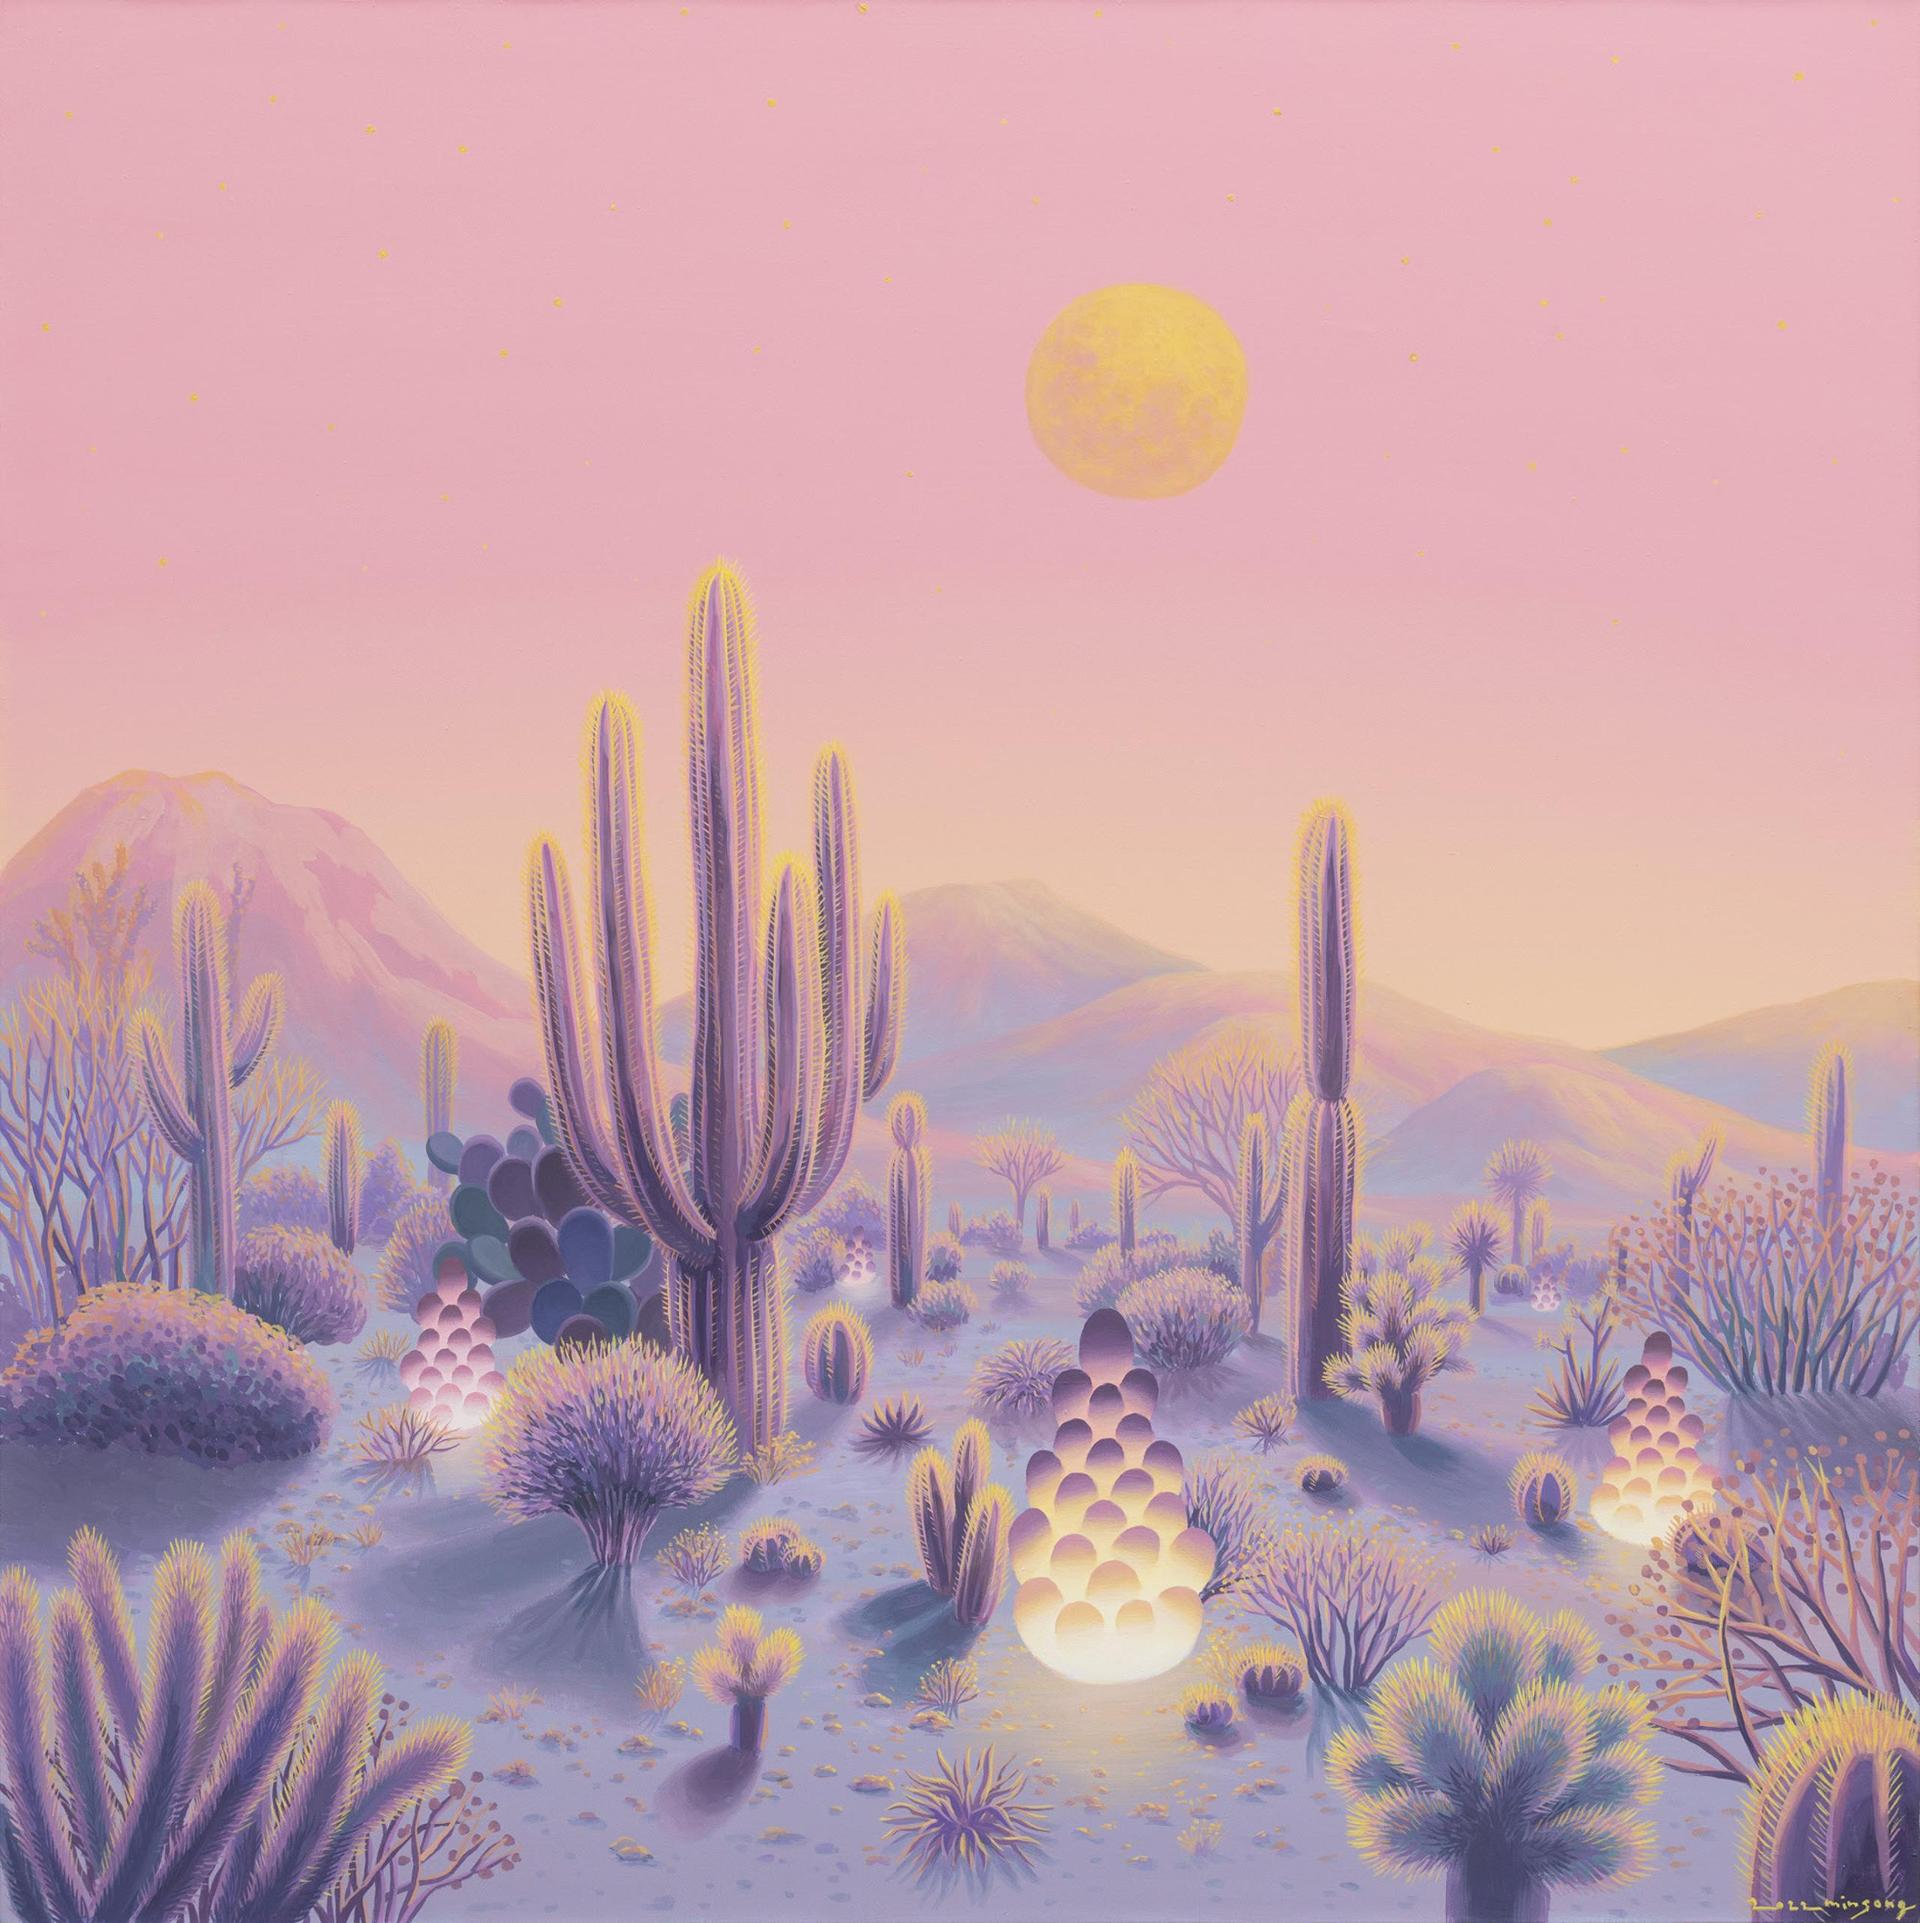 Tranquil desert